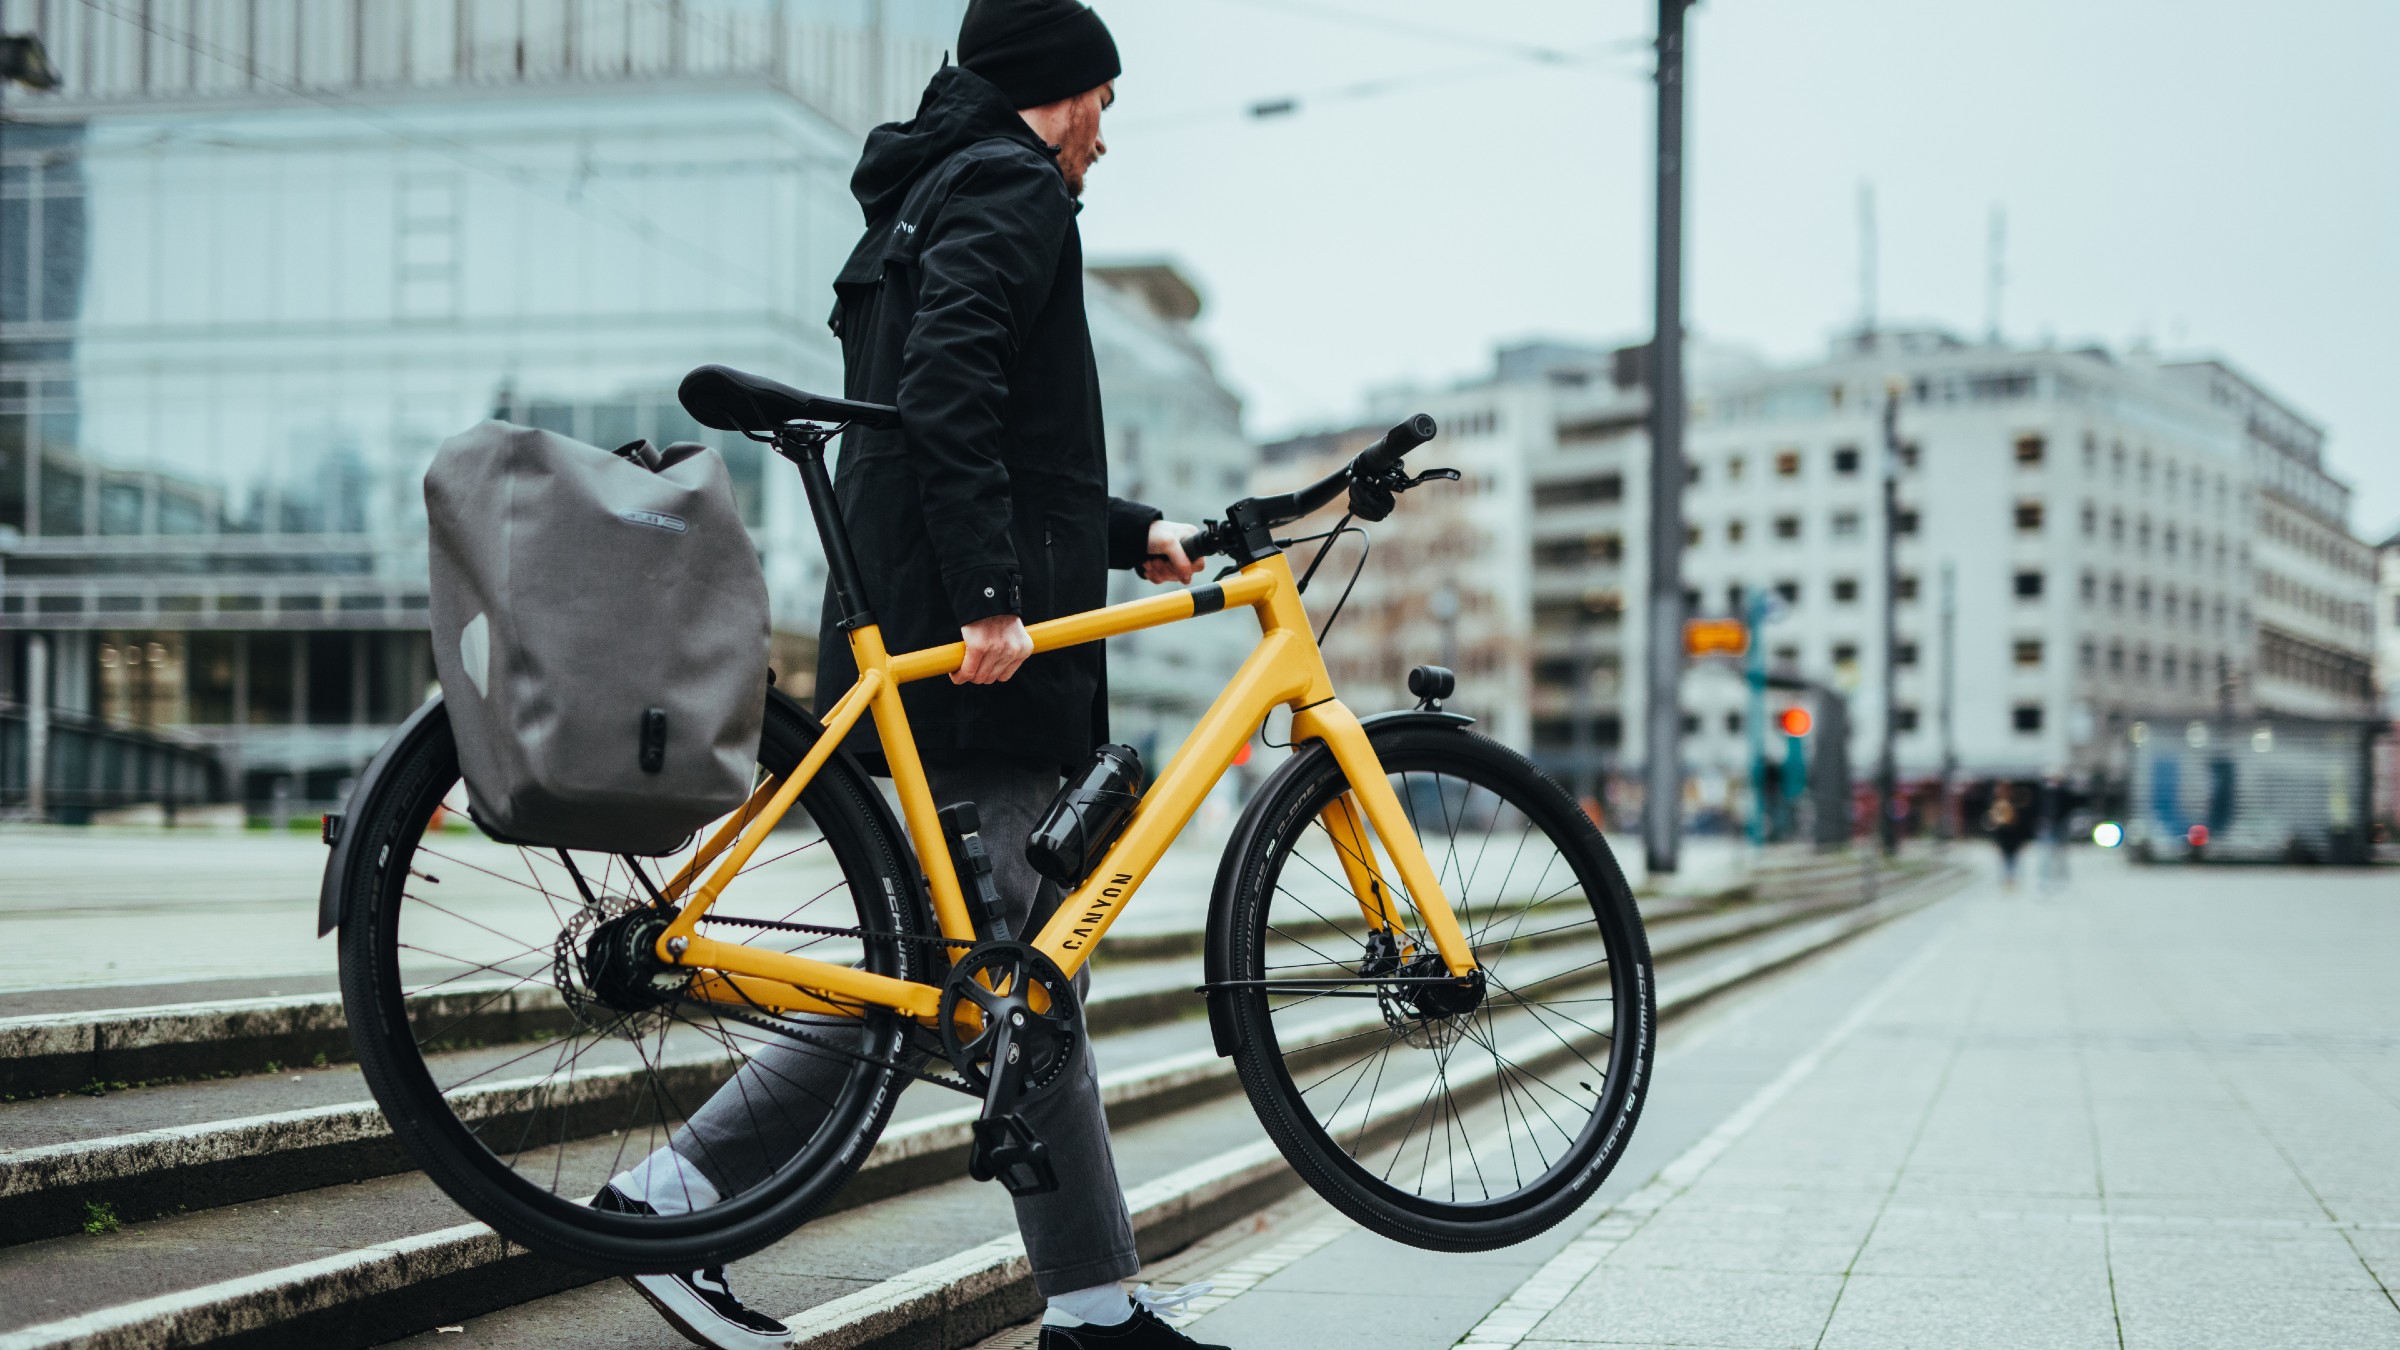 Wiskundige Gehoorzaamheid serie Hybride fietsen vs stadsfietsen. Waar ga jij voor? | CANYON BE